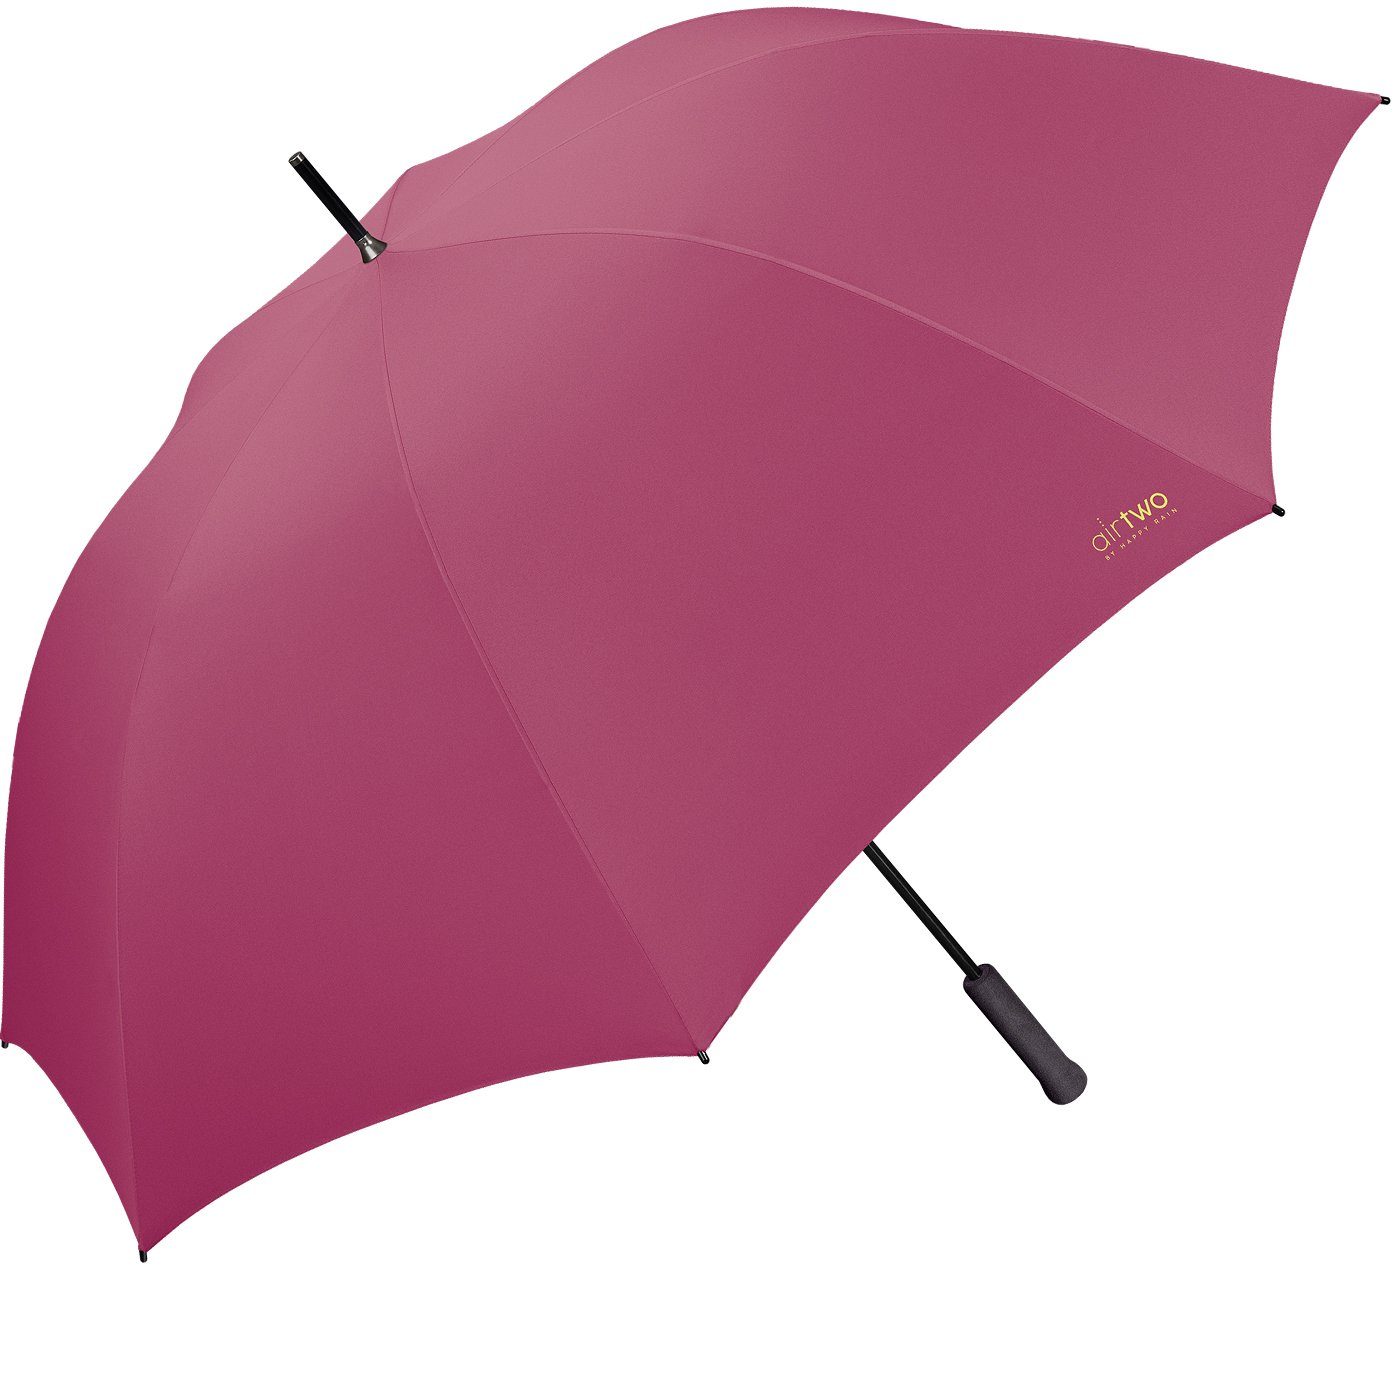 Two Gramm 262 super Partnerschirm, leichter - Air pink RAIN Zwei er wiegt HAPPY für nur Platz Golfregenschirm XXL genug mit